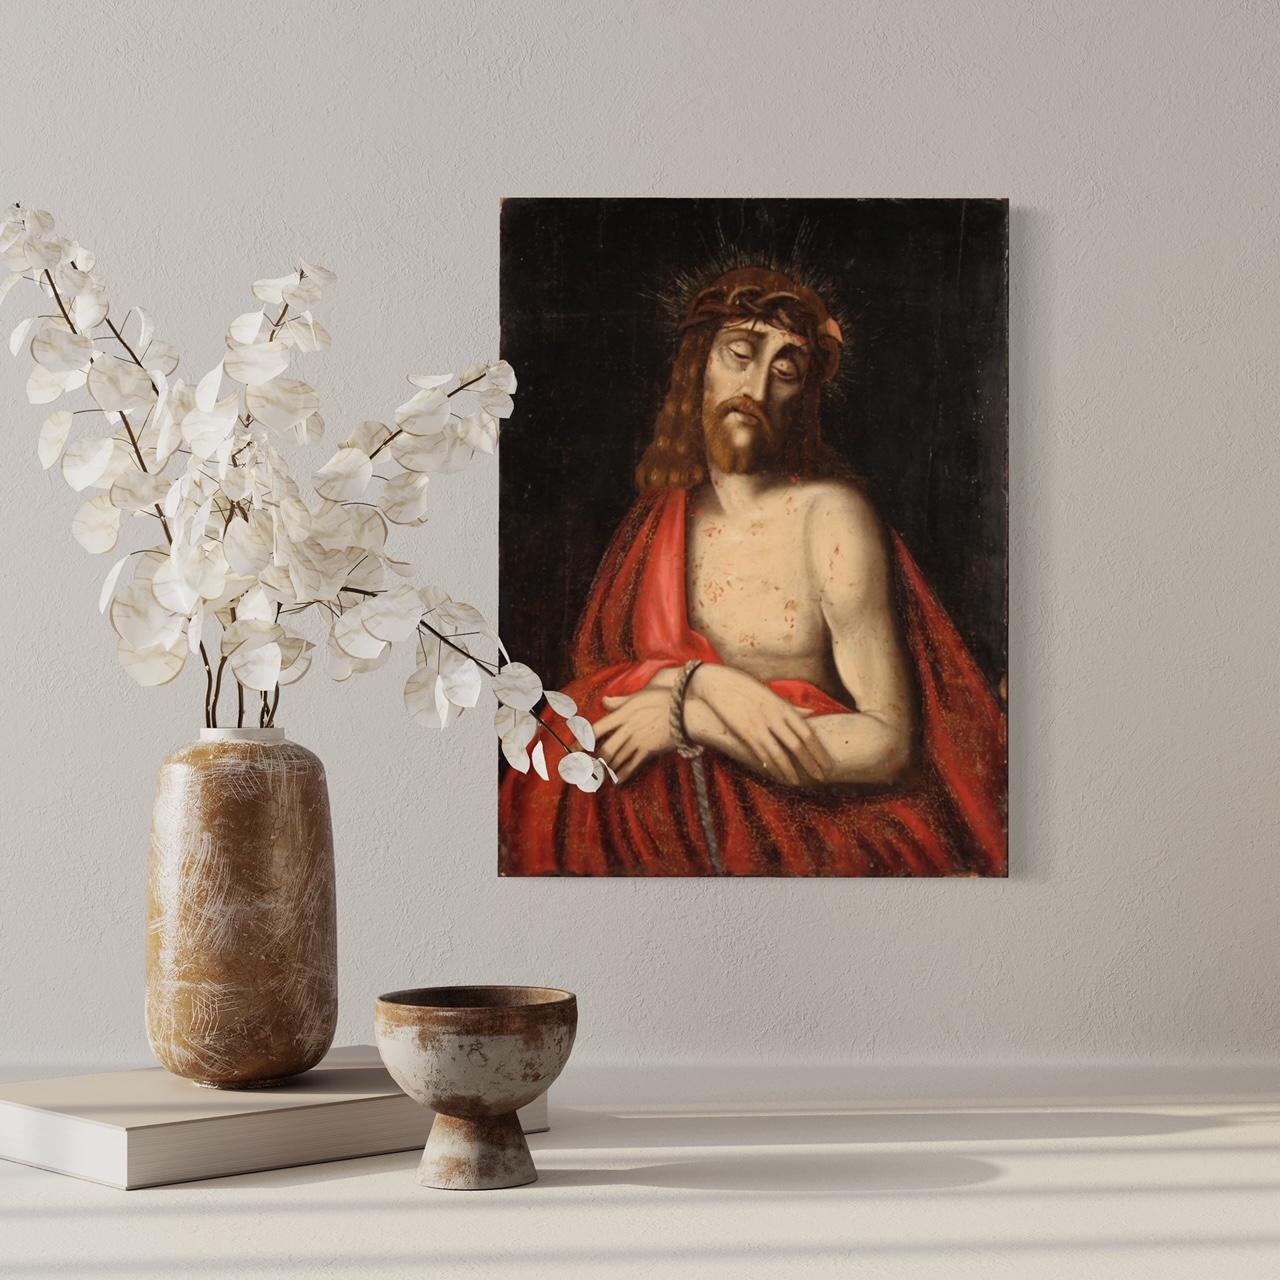 Peinture espagnole ancienne du 18e siècle. Oeuvre d'art à l'huile sur panneau représentant un sujet religieux, Ecce Homo, de bonne qualité picturale. Peinture sur panneau de bois de plus de 3 cm d'épaisseur, format idéal. Peinture de grand